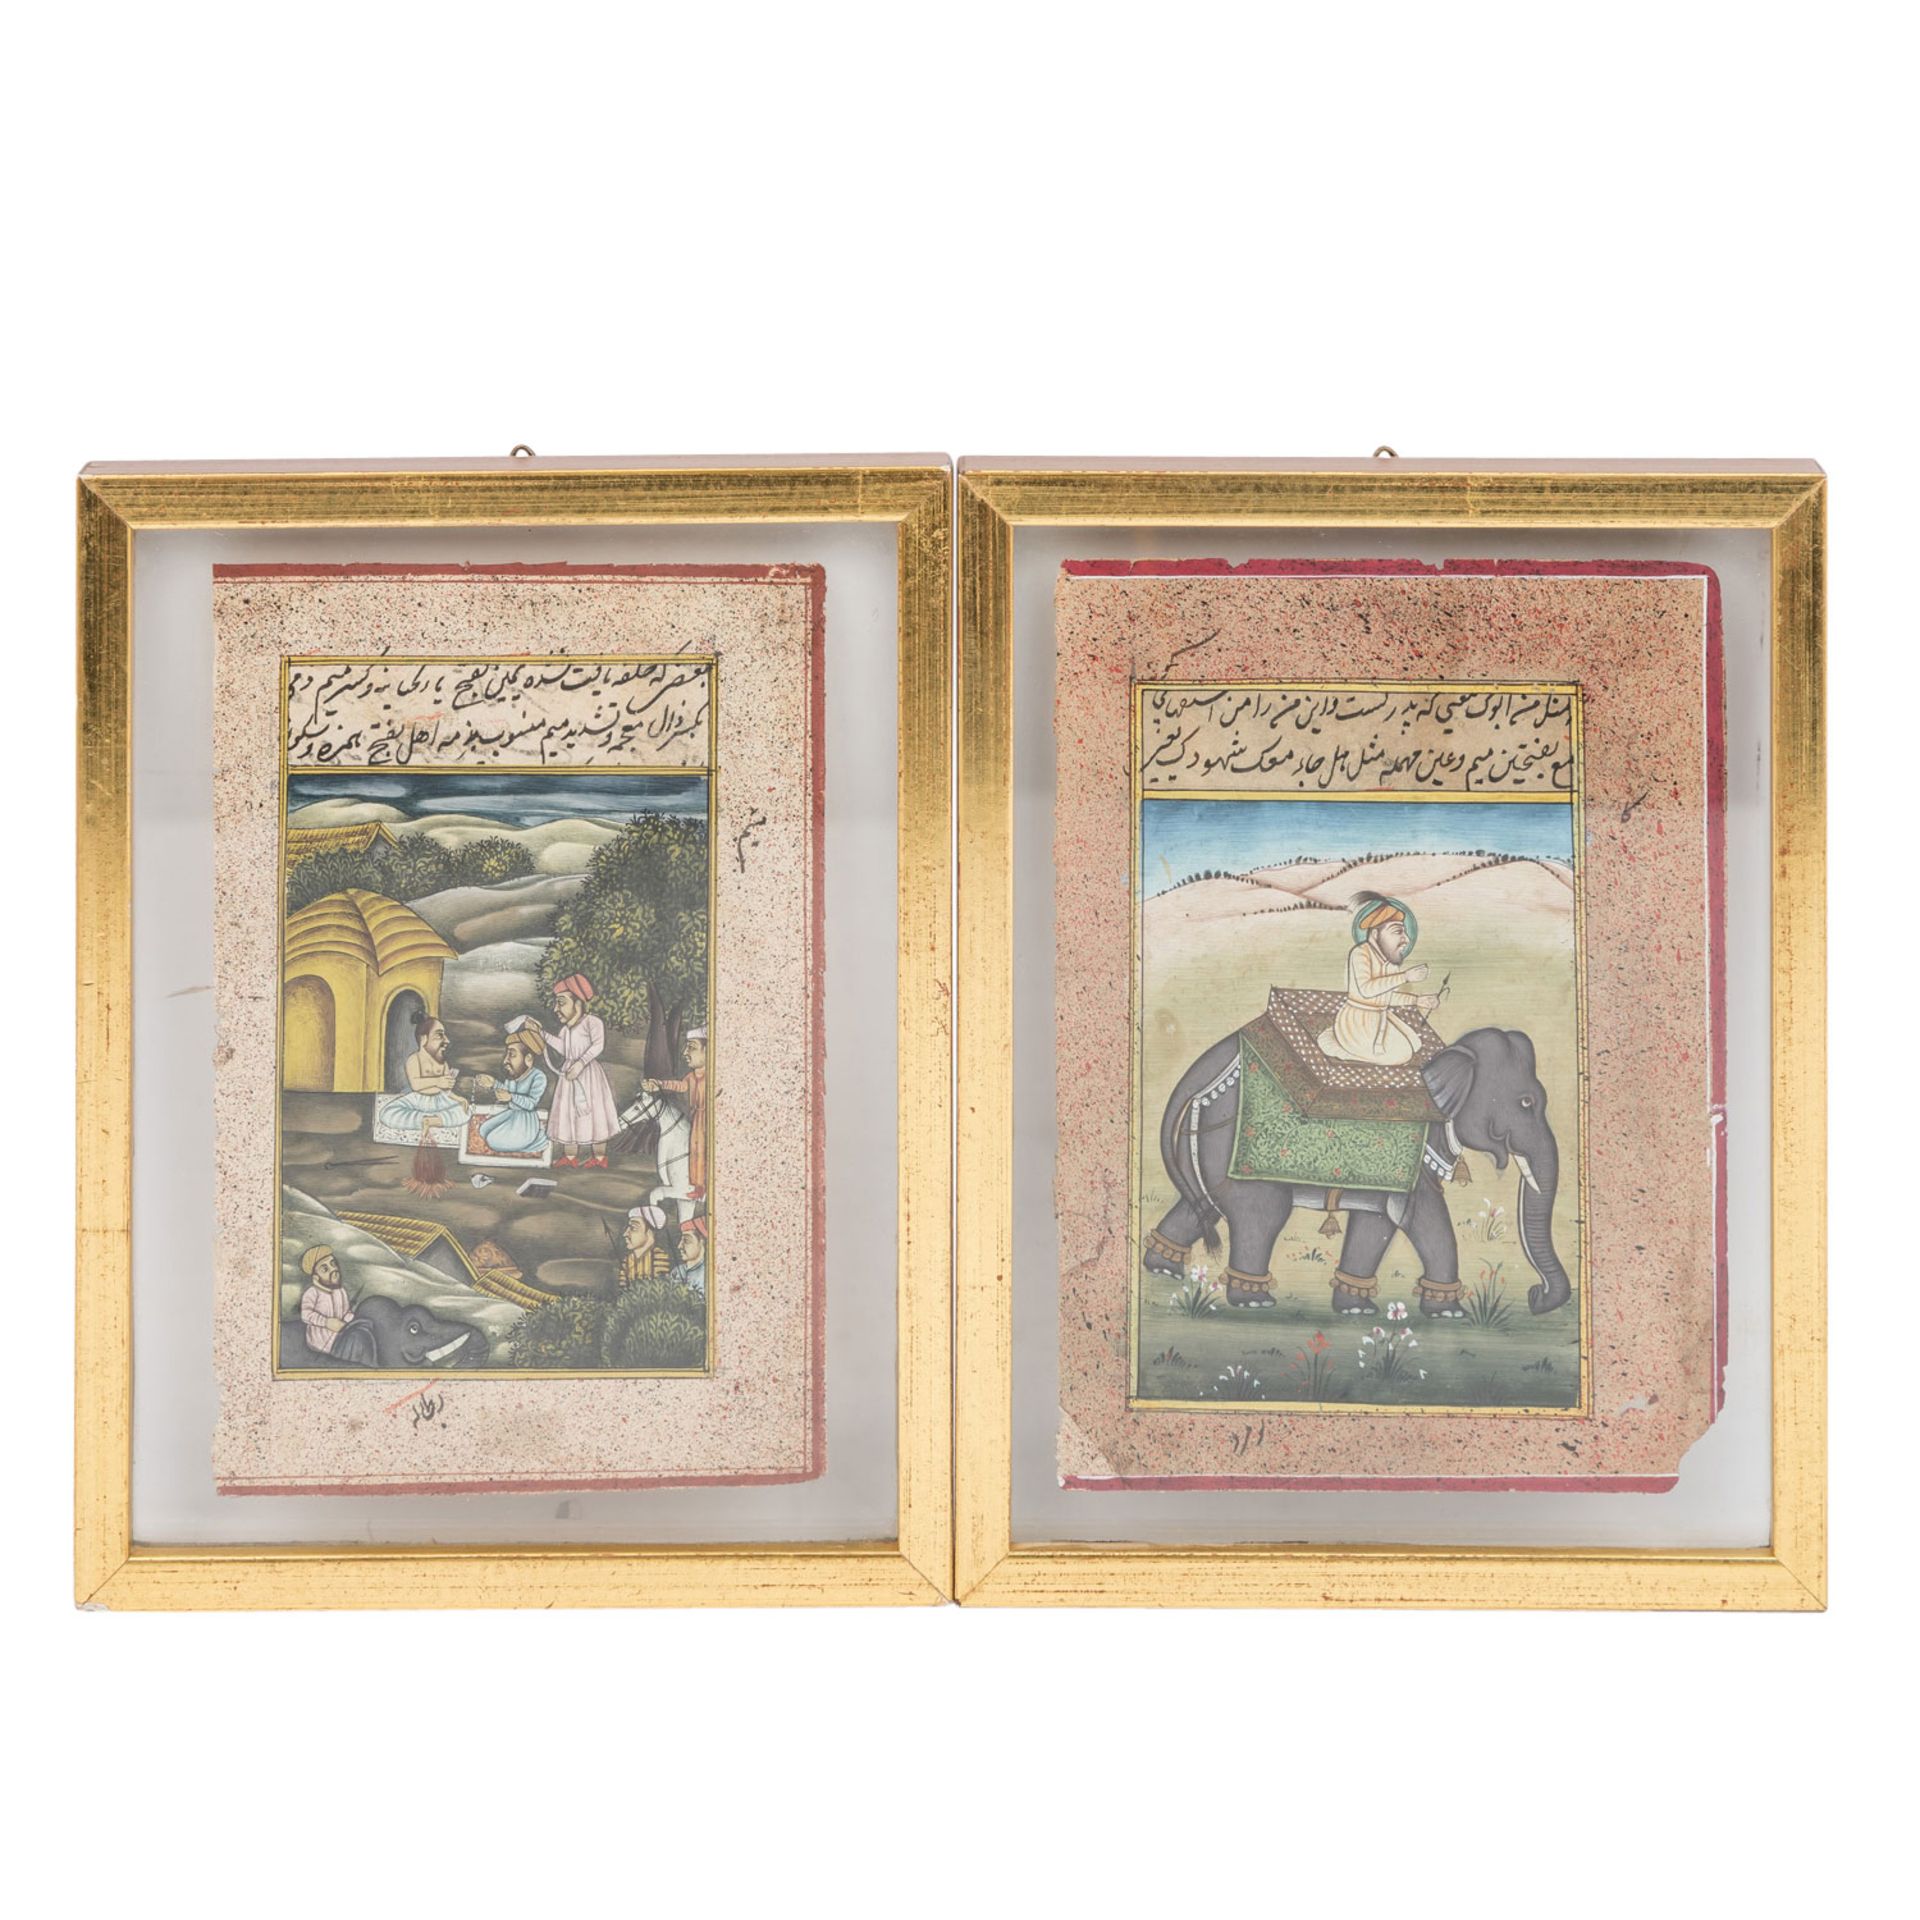 4 illustrierte Buchseiten und Kalligraphie. INDIEN/PERSIEN, um 1850/60. - Image 4 of 5